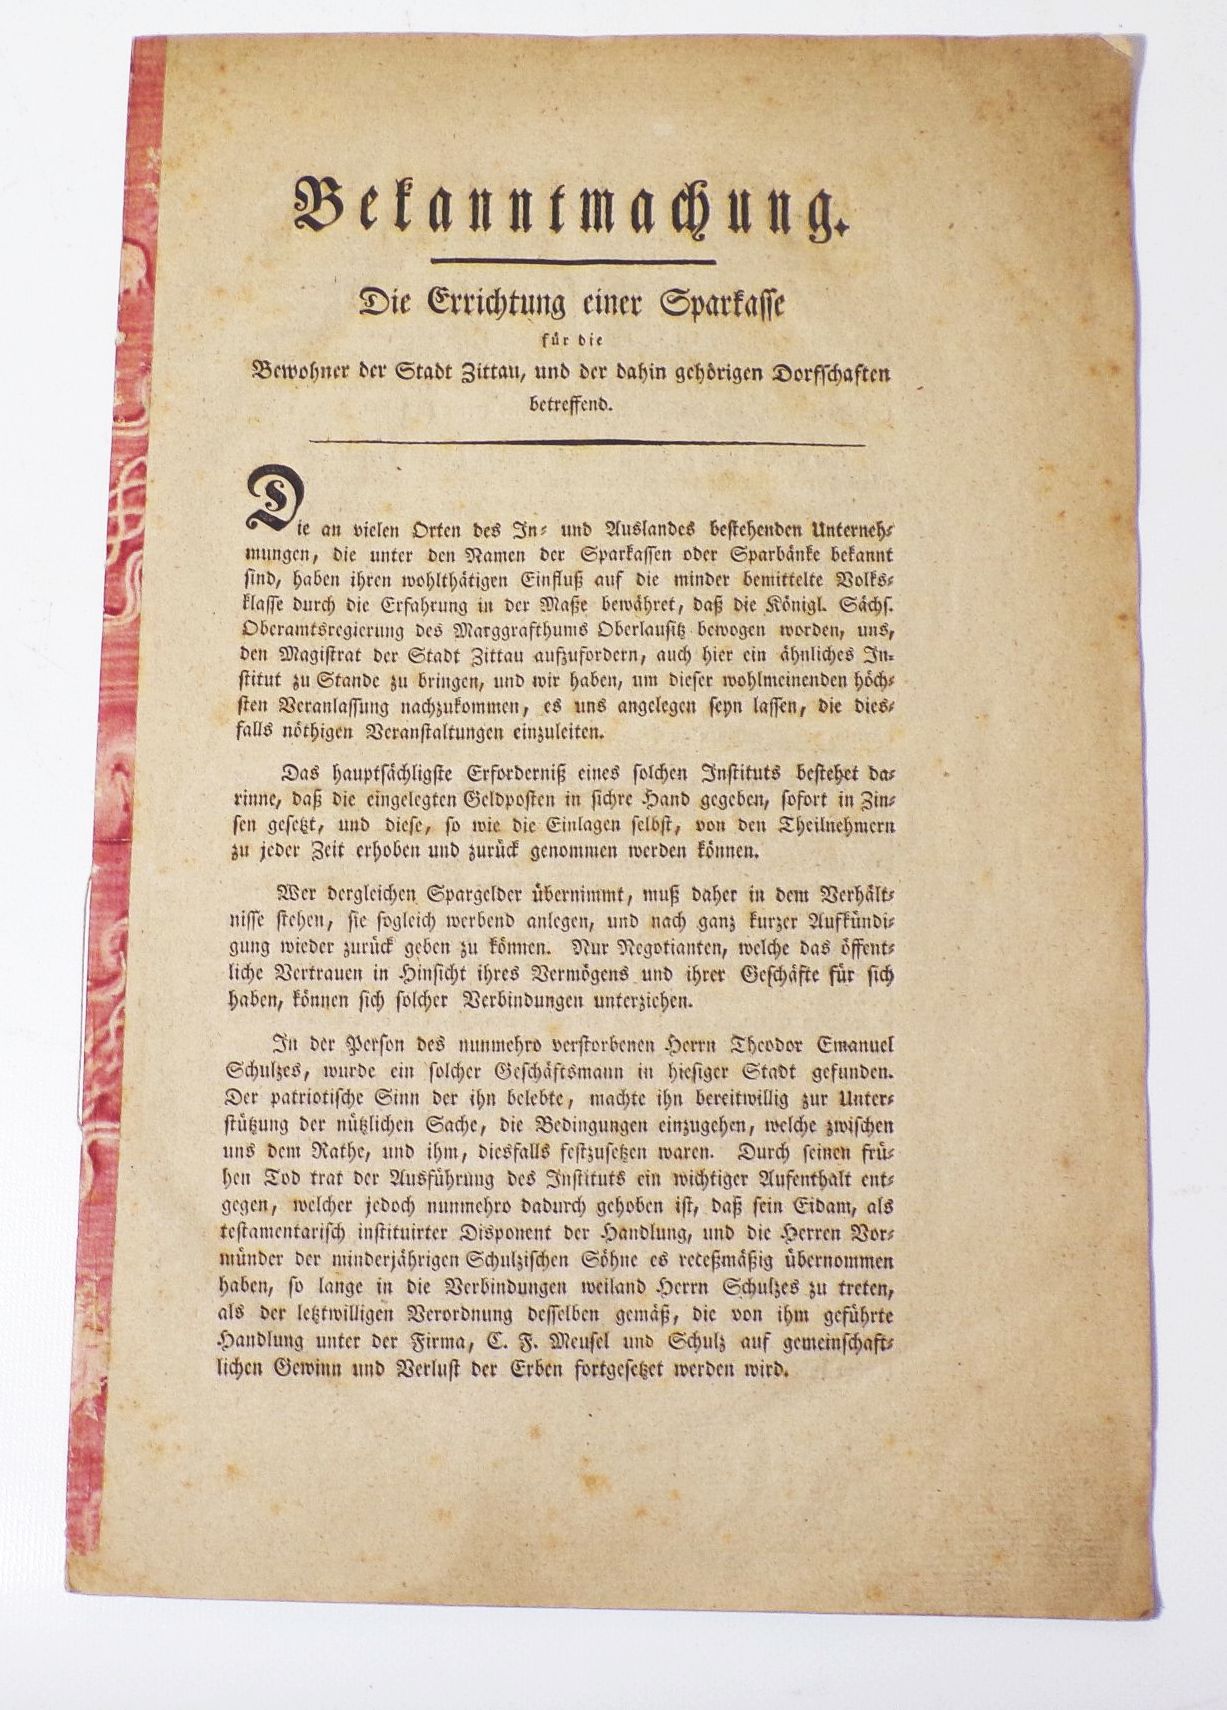 Bekanntmachung Errichtung einer Sparkasse Zittau 1825 